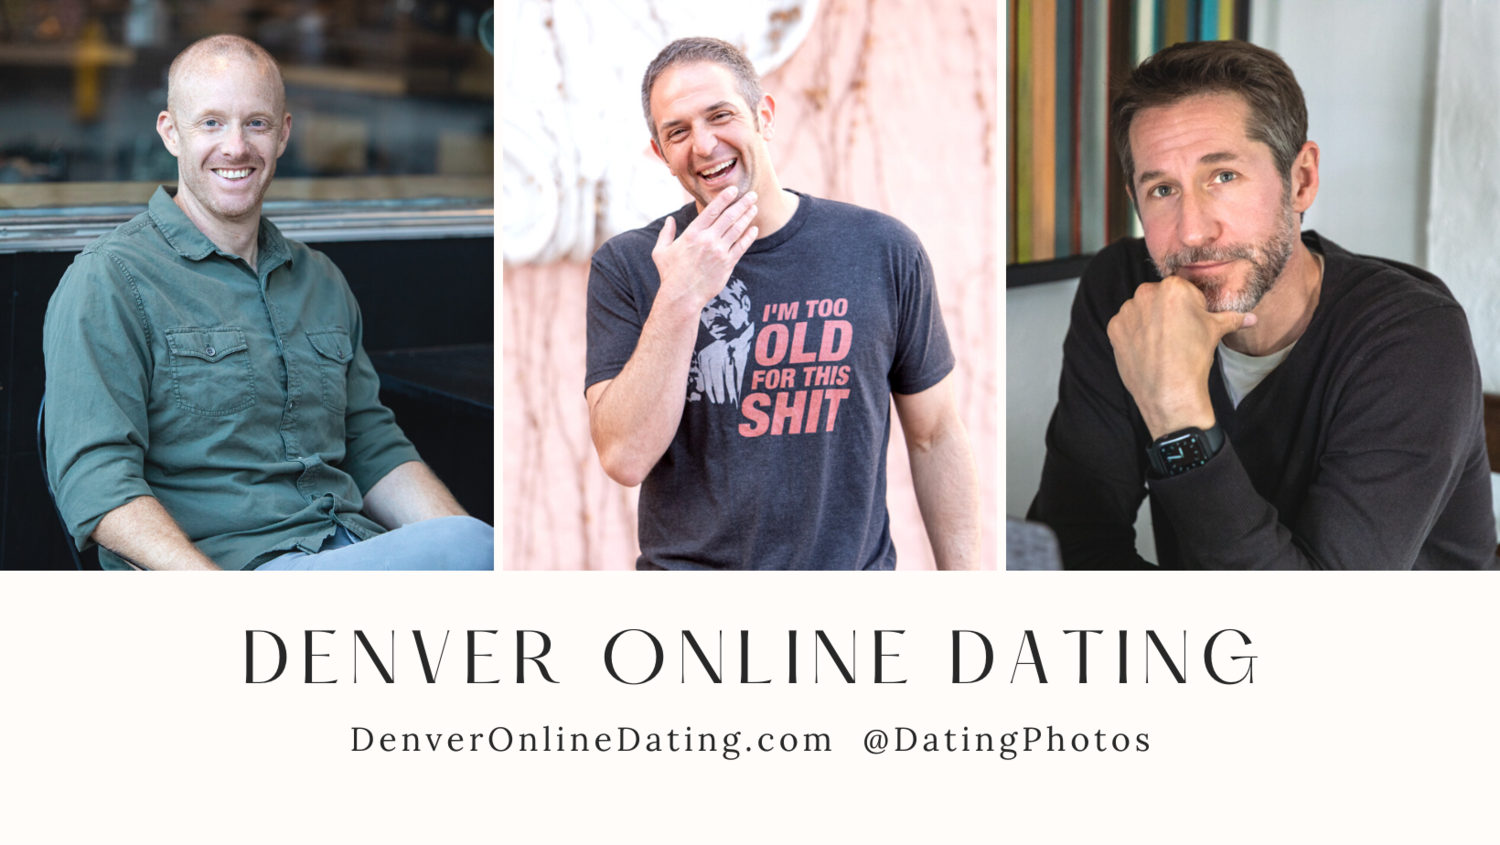 Internet dating sites in Denver